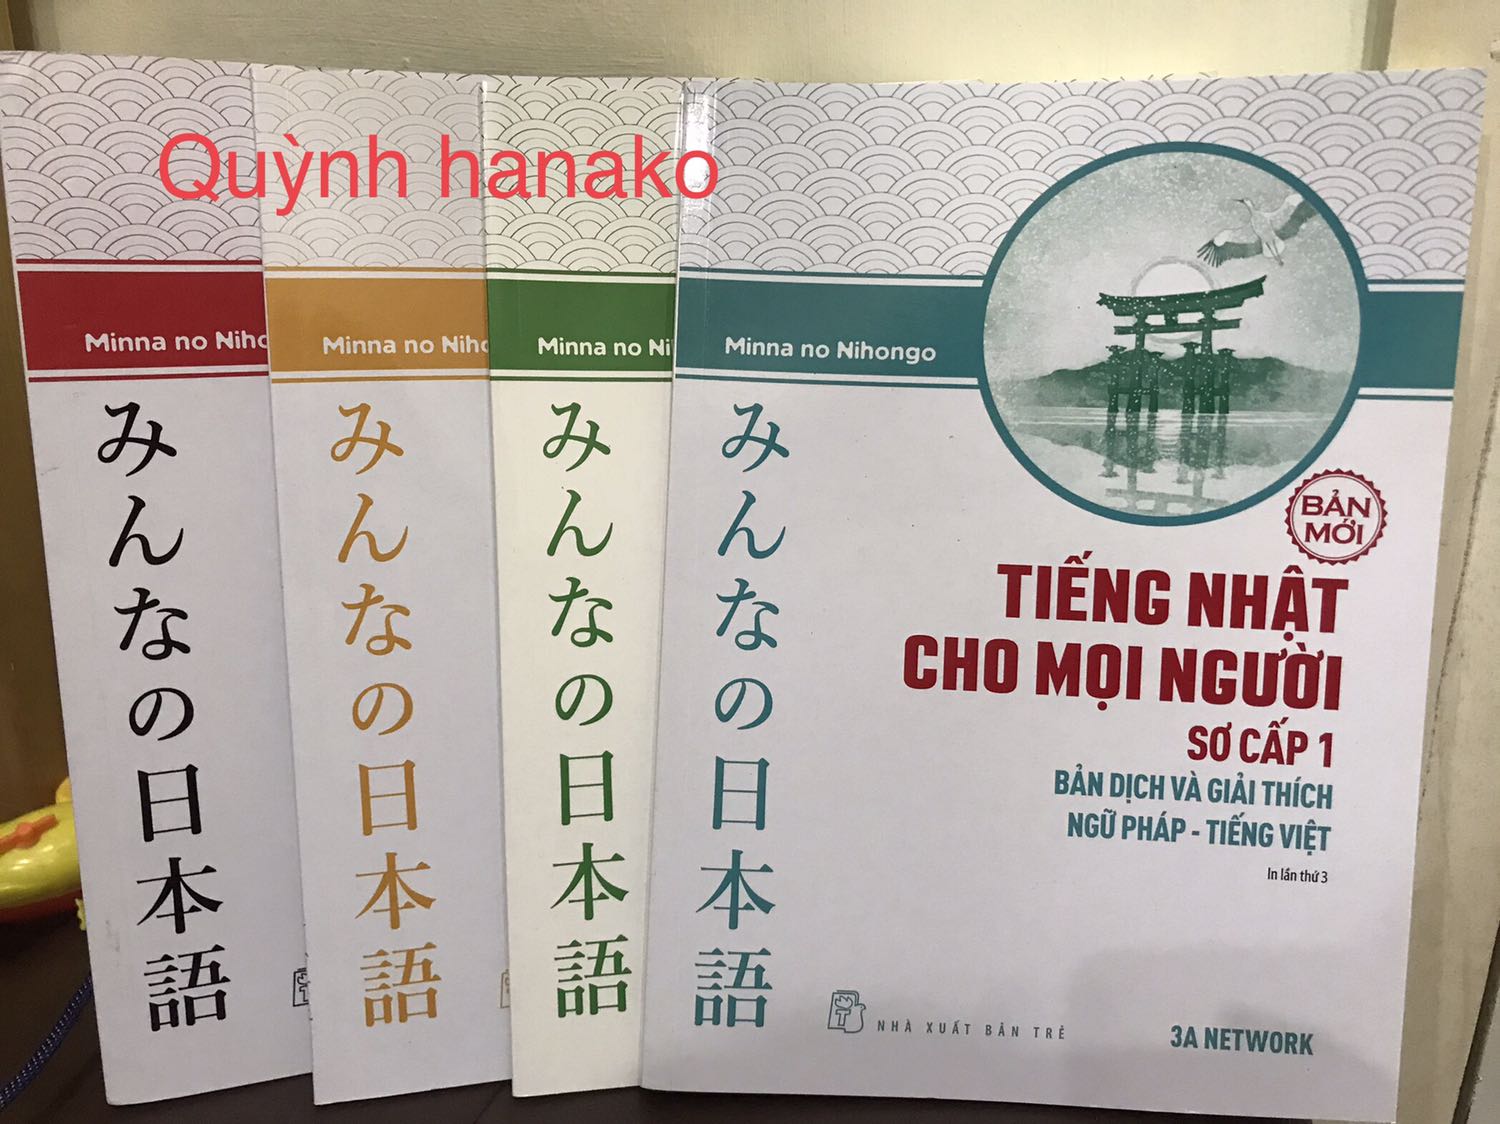 Tiếng Nhật Sơ Cấp 1 25 Bai đọc Hiểu Trinh độ Sơ Cấp Sach Hay Mỗi Ngay